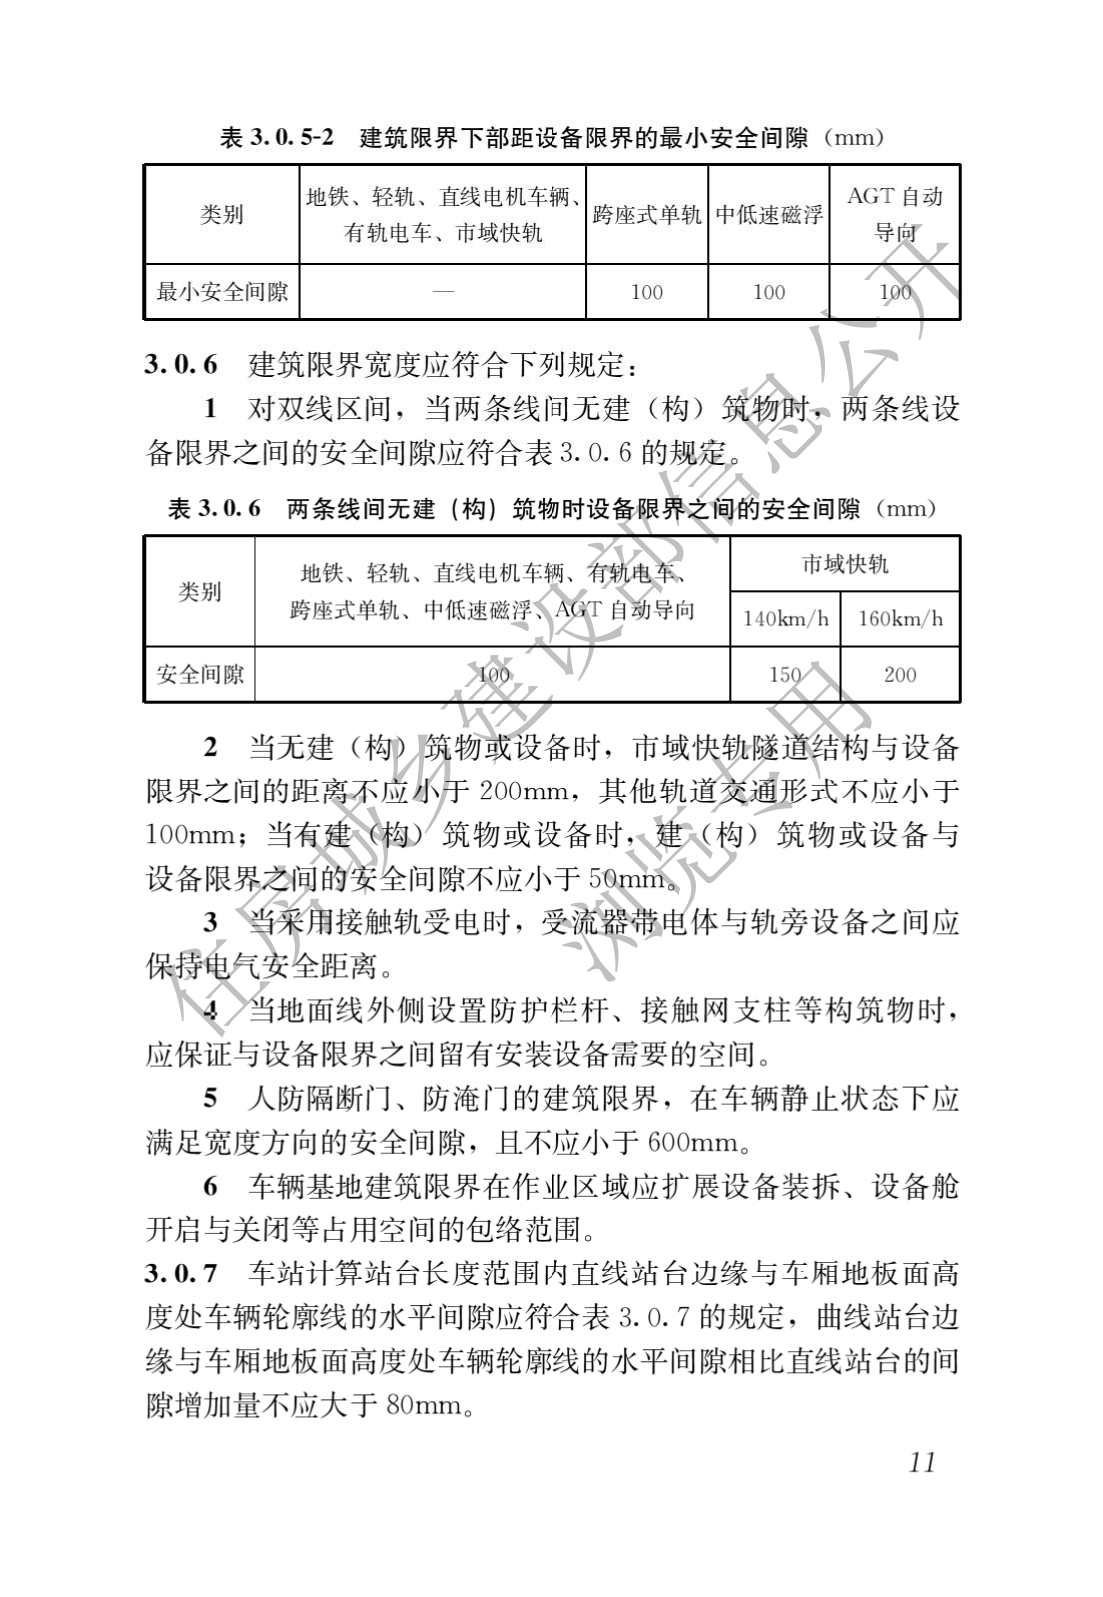 住房和城鄉建設部關于發布國家标準 《城市軌道交通工(gōng)程項目規範》的公告(圖15)